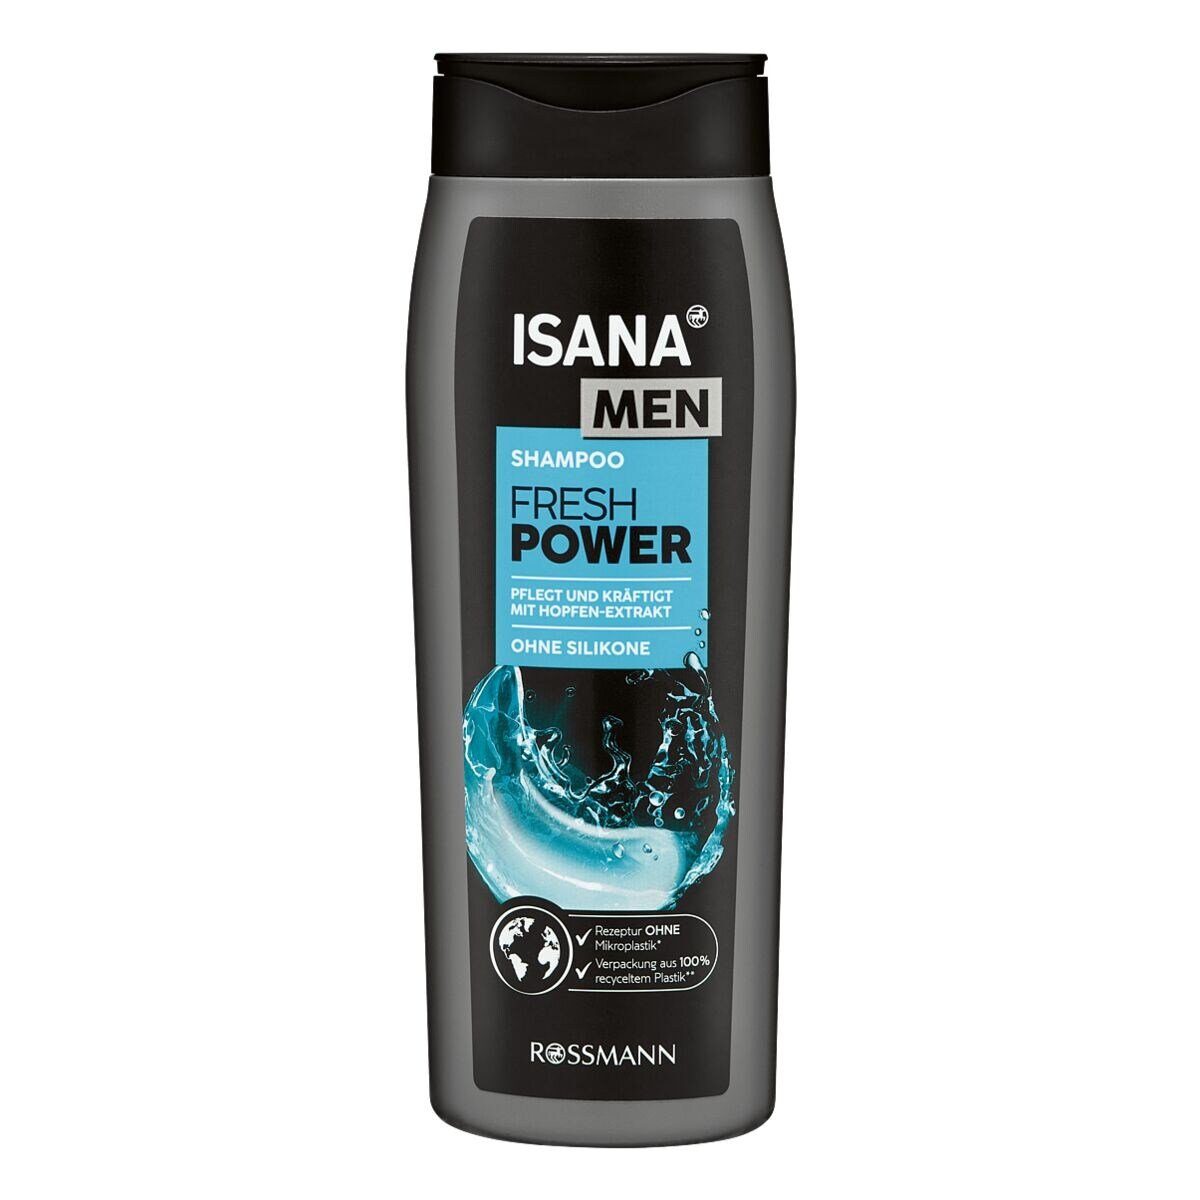 ISANA Haarshampoo MEN extra Power, für kraftvolles und gesundes Haar